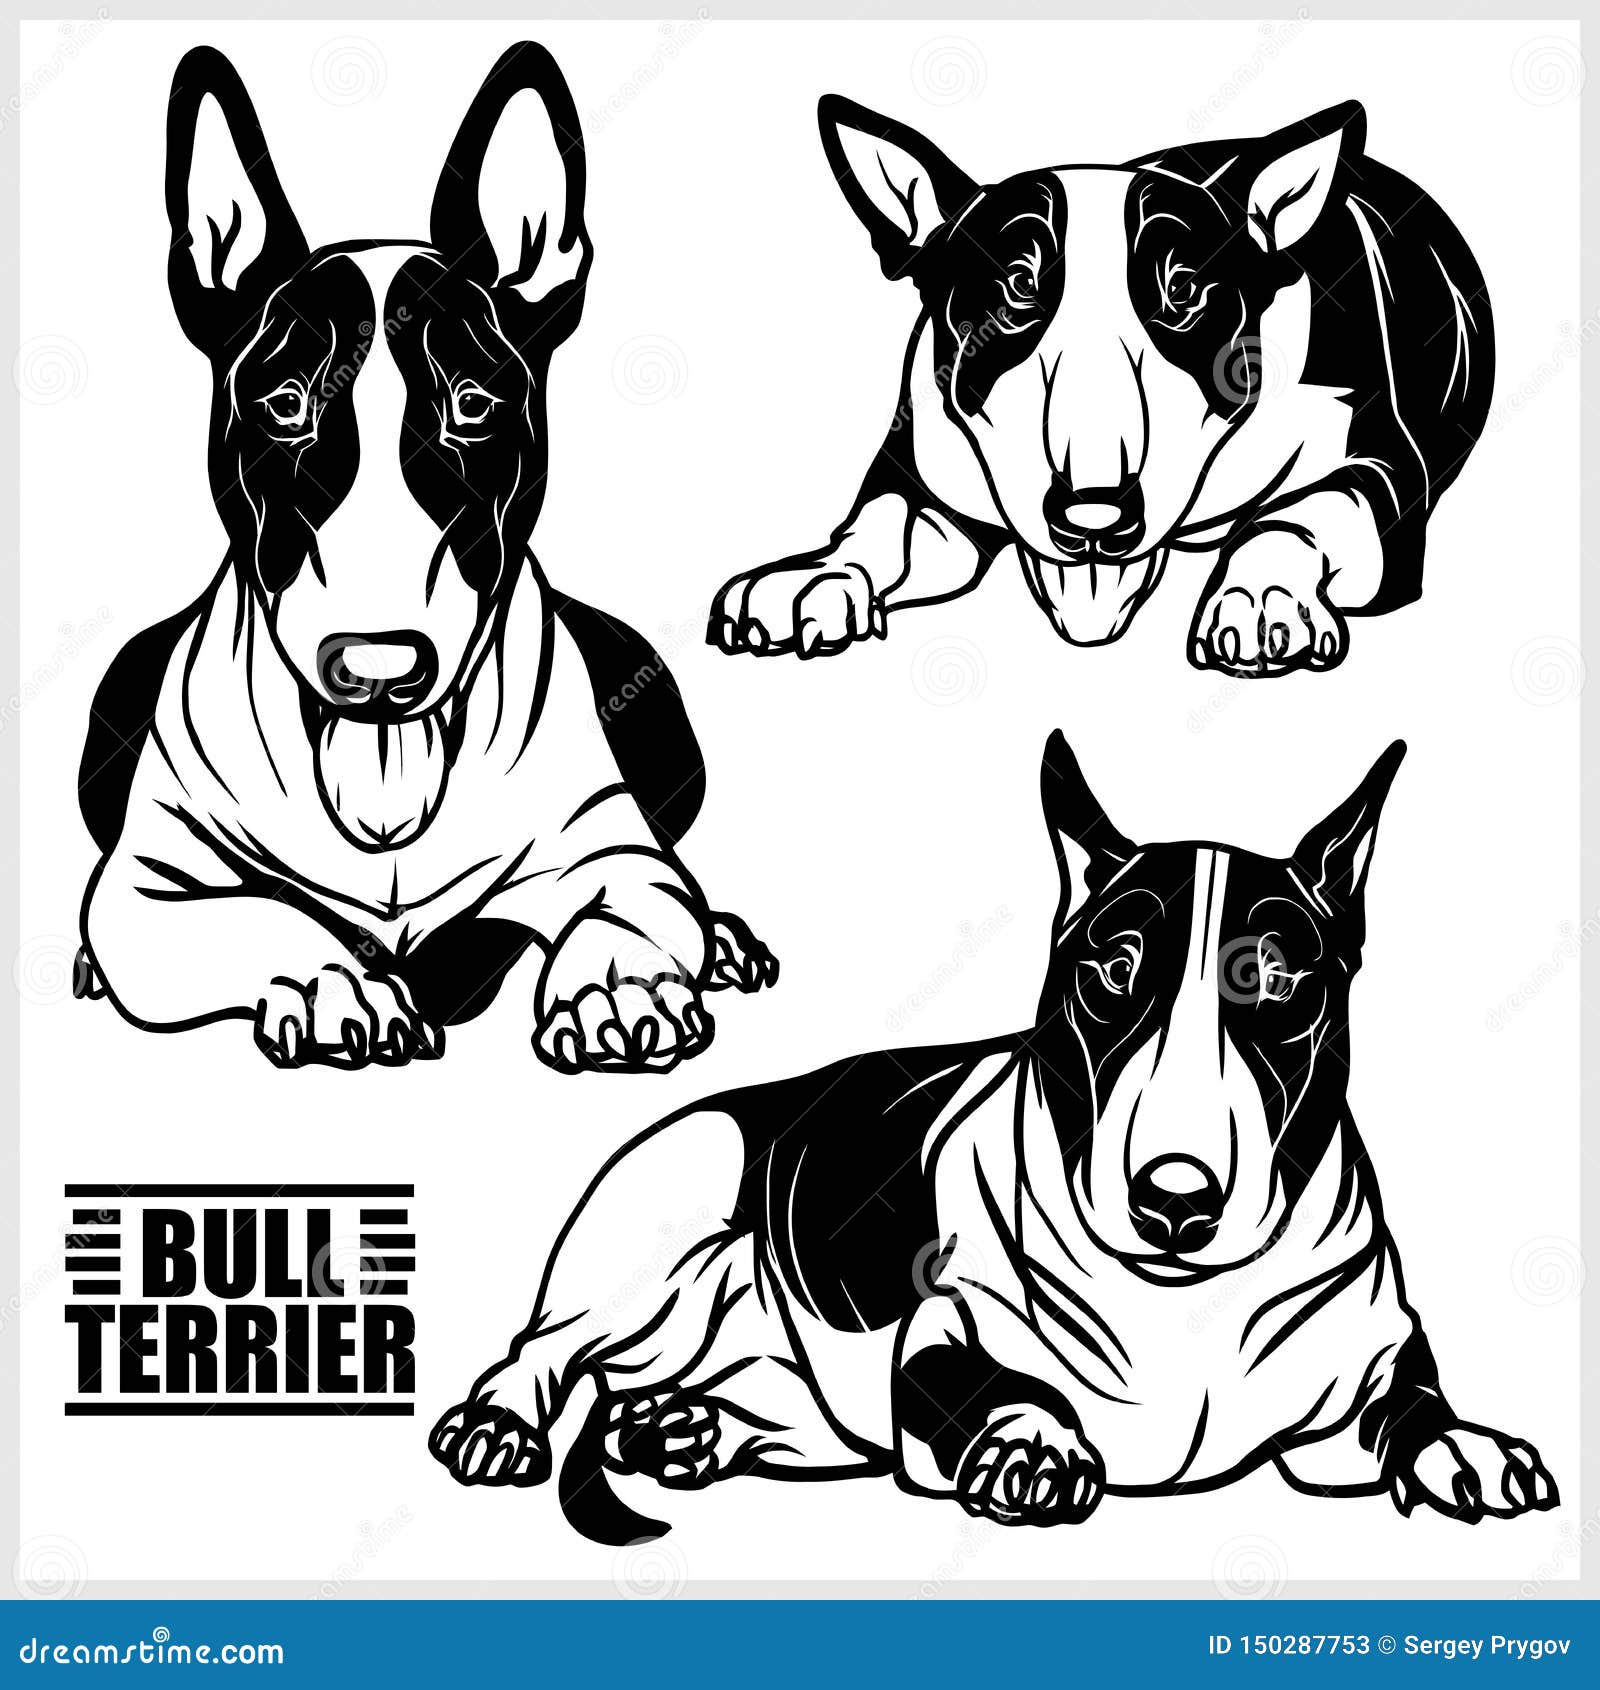 Bull Terrier Logo